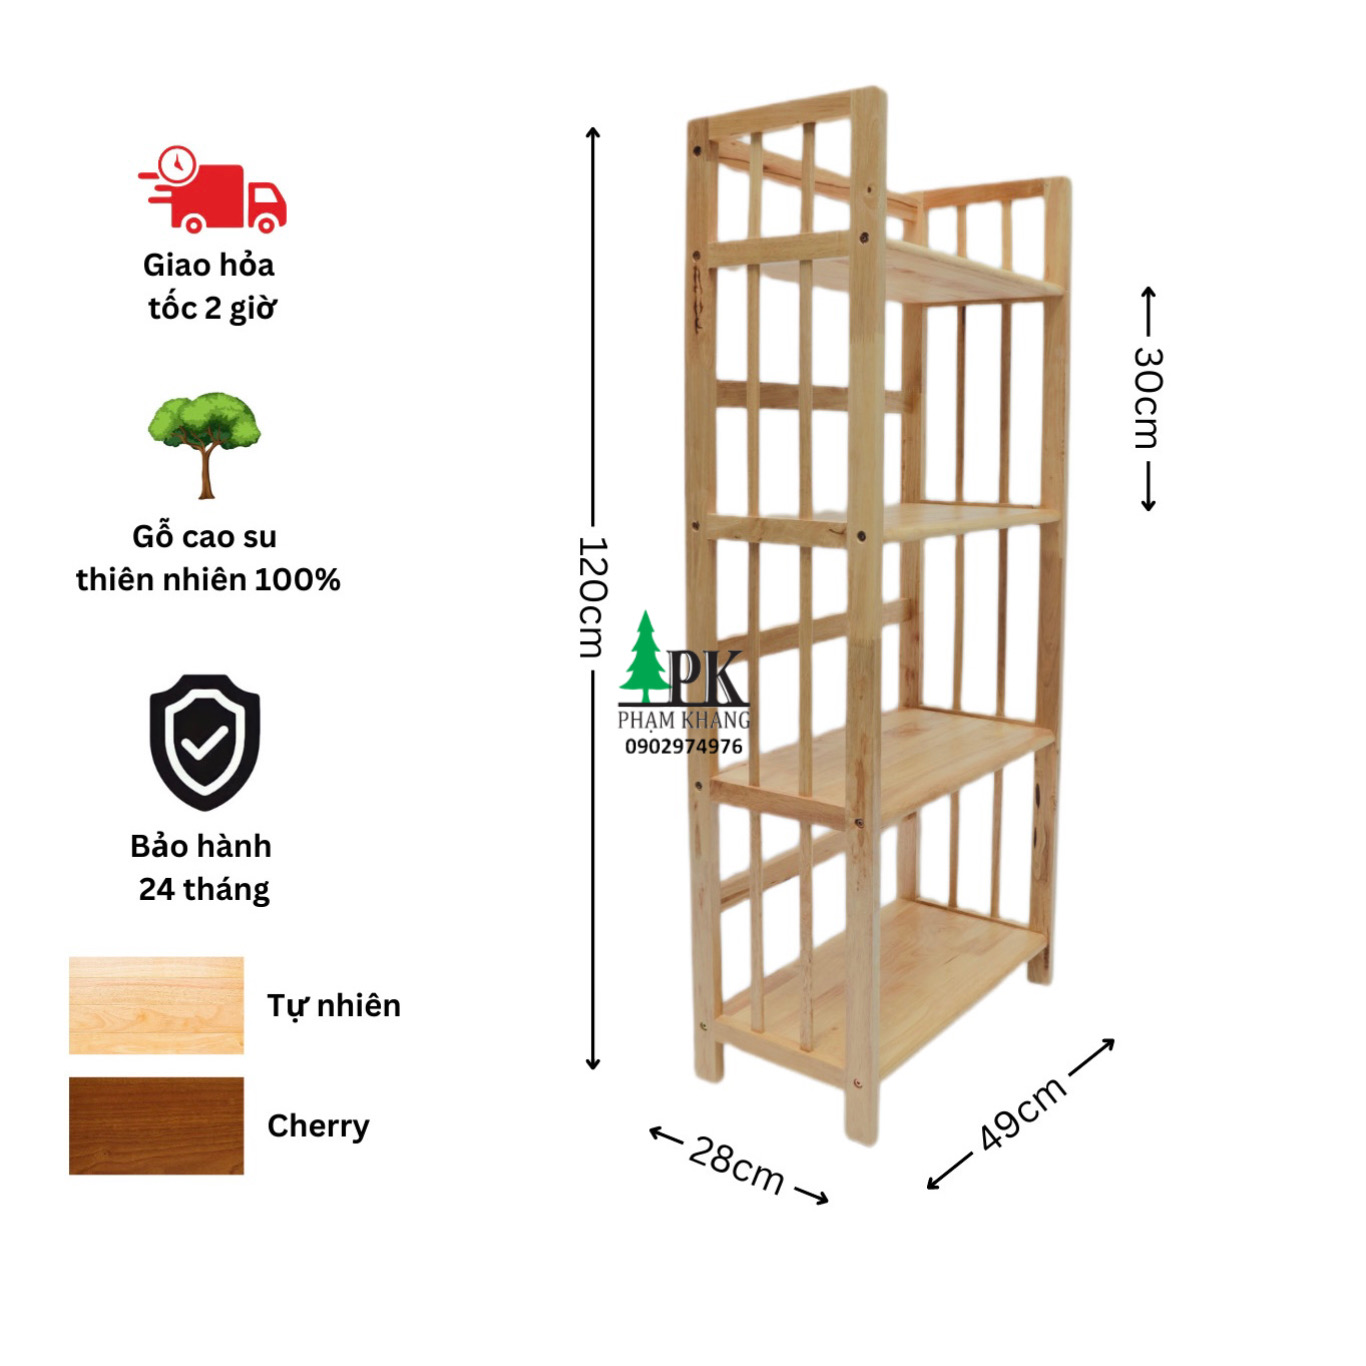 Kệ sách gỗ 4 tầng Phạm Khang - Gỗ cao su tự nhiên màu Gỗ Tự Nhiên/ Vàng Cherry - Kích thước rộng 50 cm